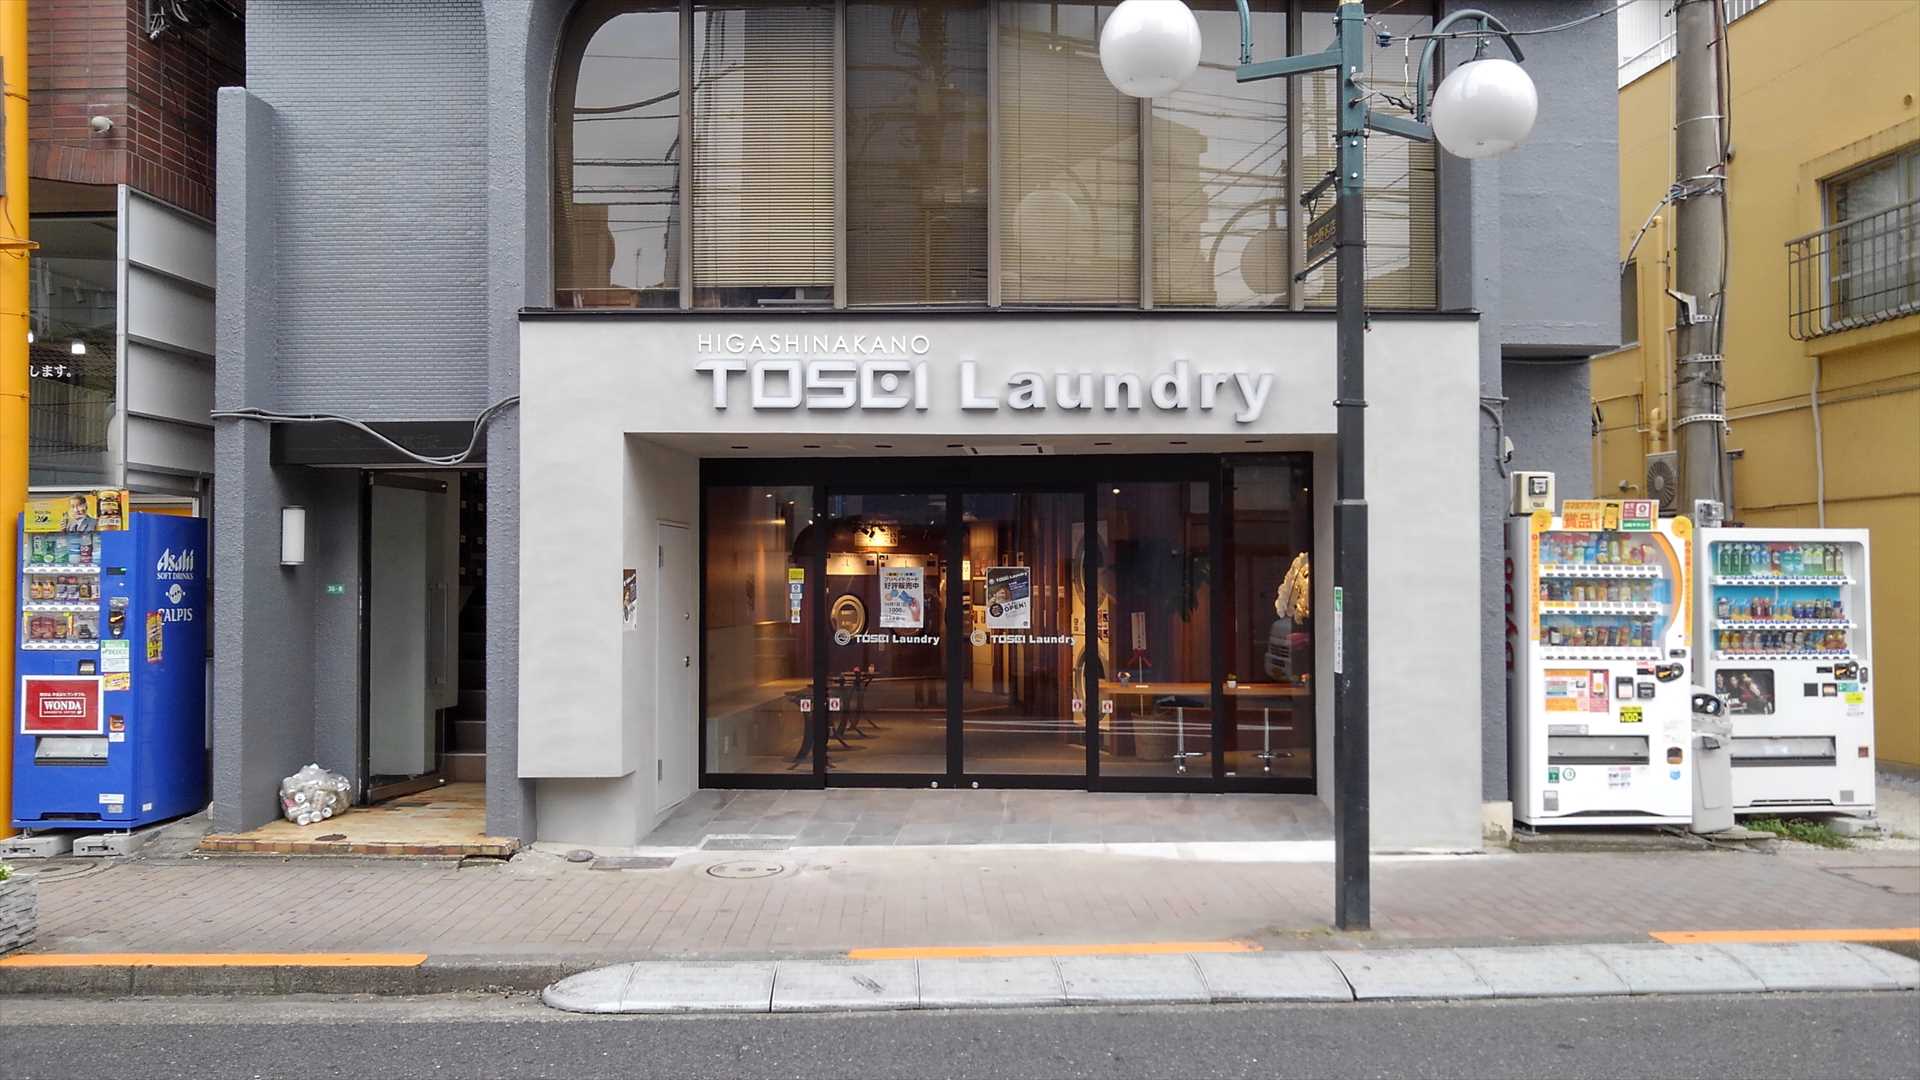 TOSEI直営の集中管理システム導入店「コインレス・コインランドリーHIGASHINAKANO TOSEI Laundry」(東京都中野区)